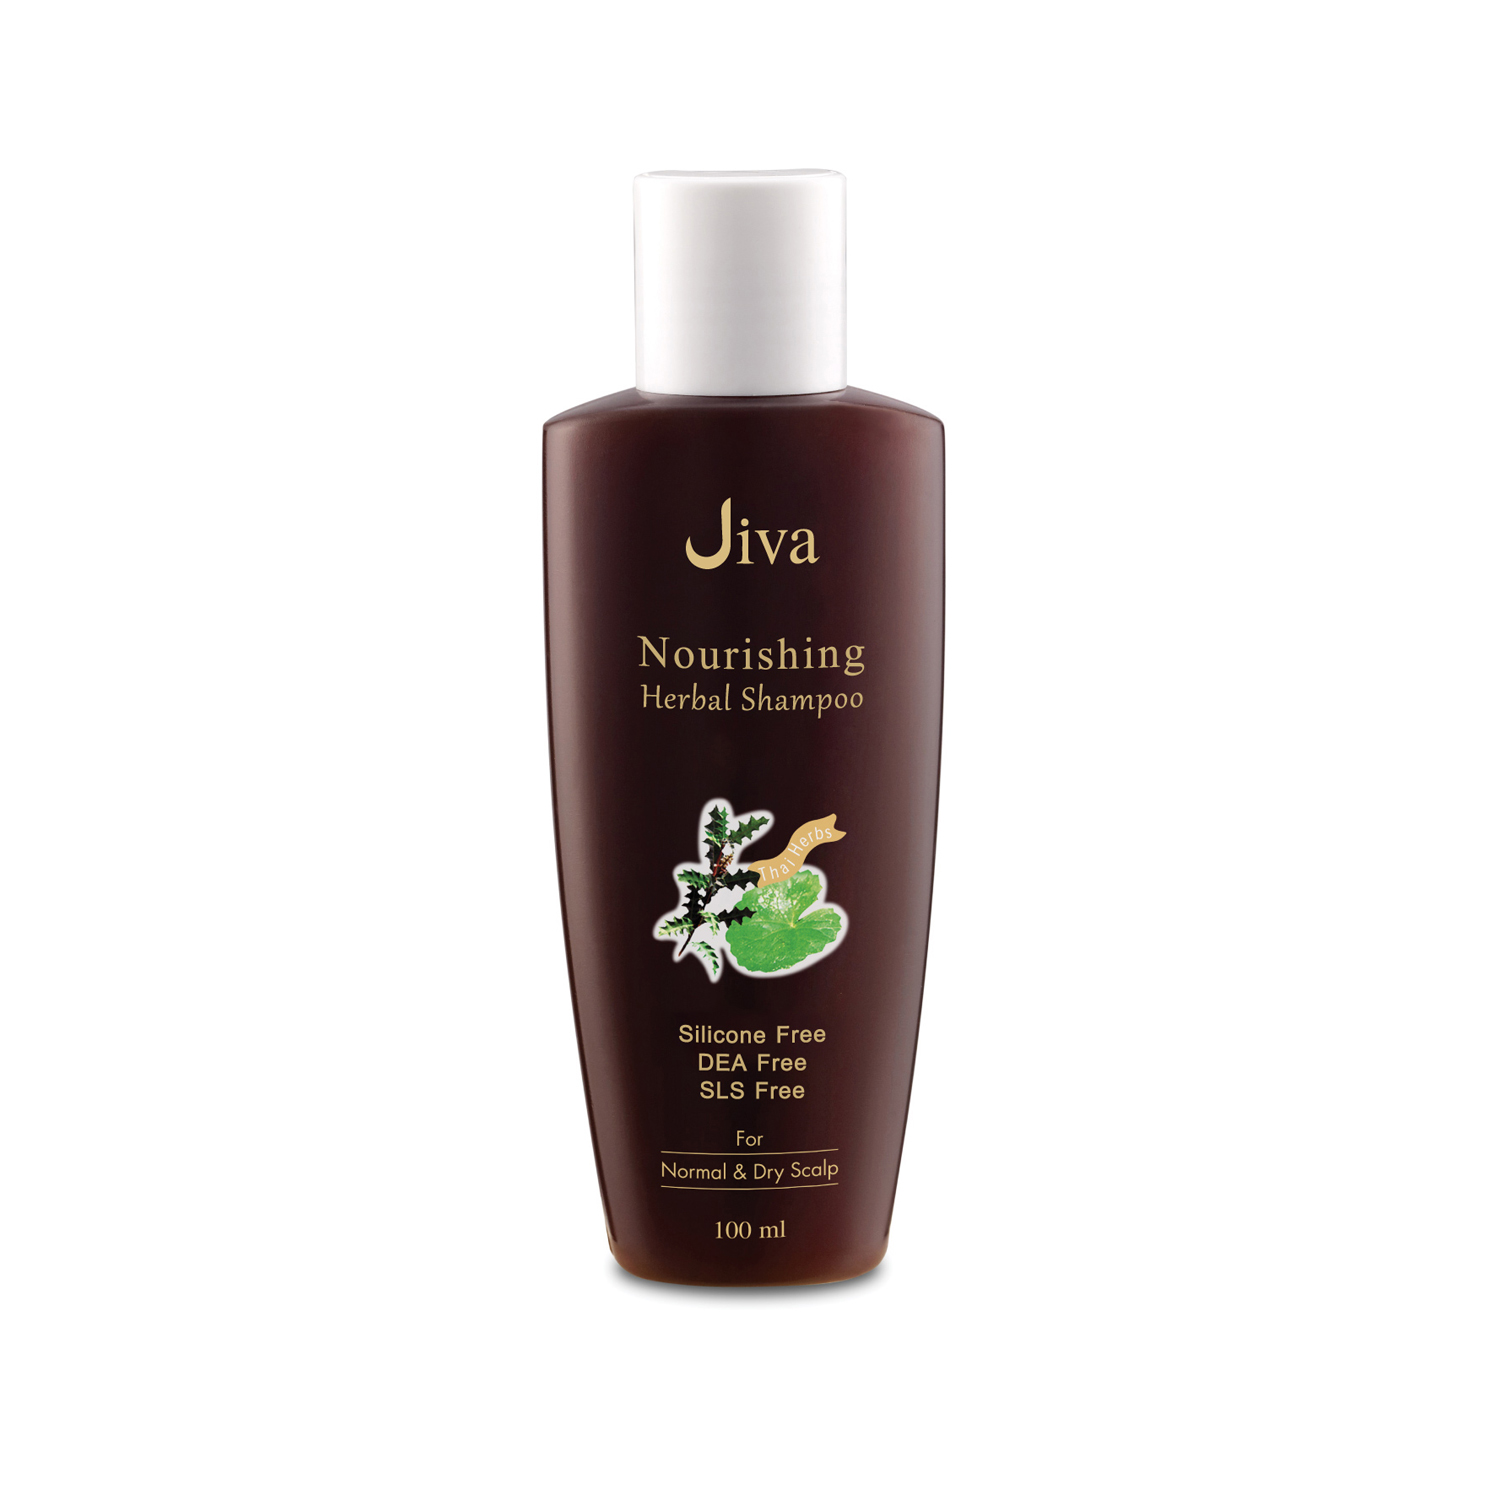 JIVA Nourishing Herbal Shampoo - จีวา นอริชชิ่ง เฮอบอล แชมพู